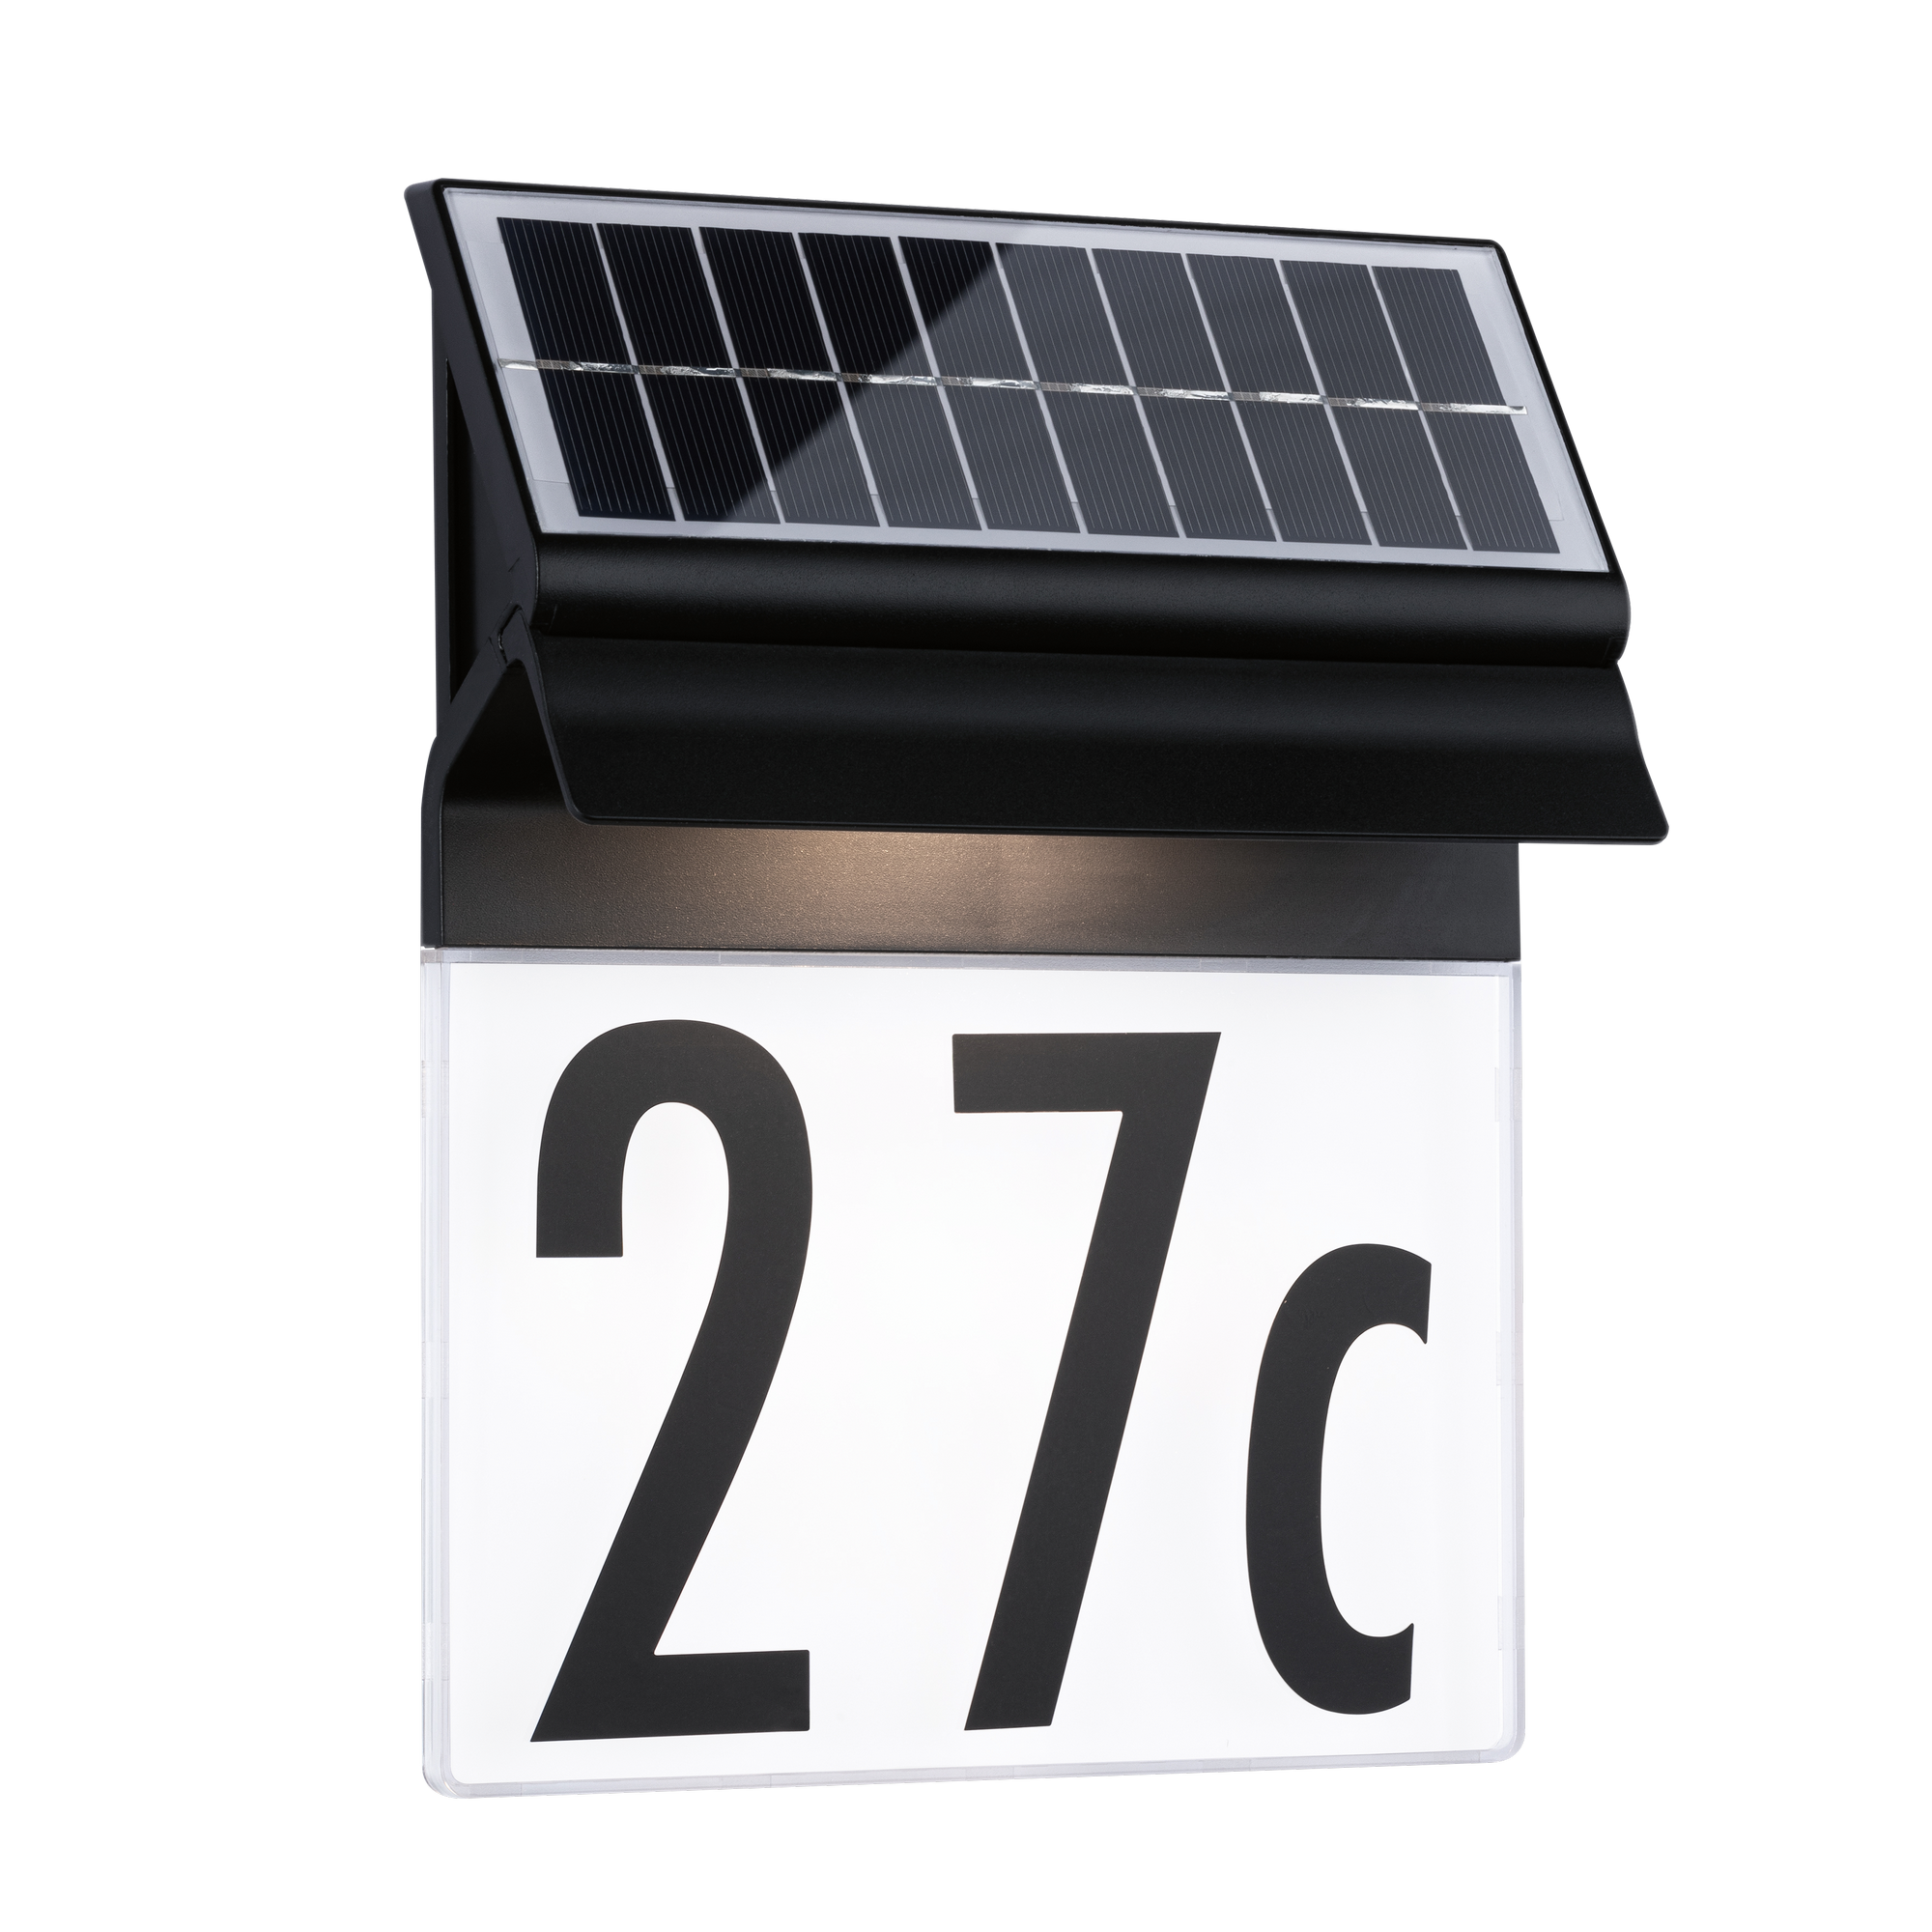 Solar-Hausnummernleuchte 'Malta' schwarz 23 x 18 cm, mit Stickersets + product picture